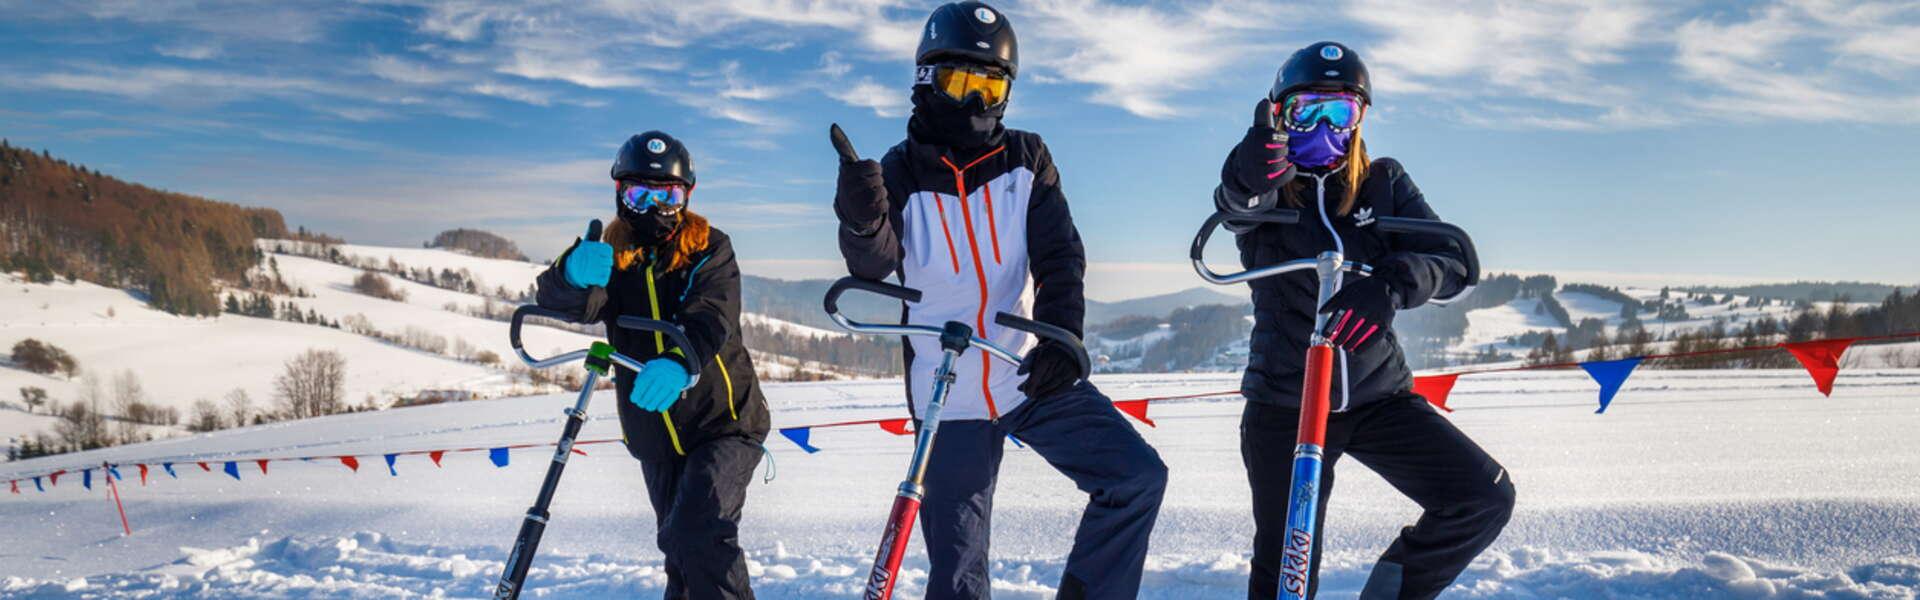 Widok na 3 zadowolone osoby w strojach narciarskich trzymające Skki Trikki do jazdy.